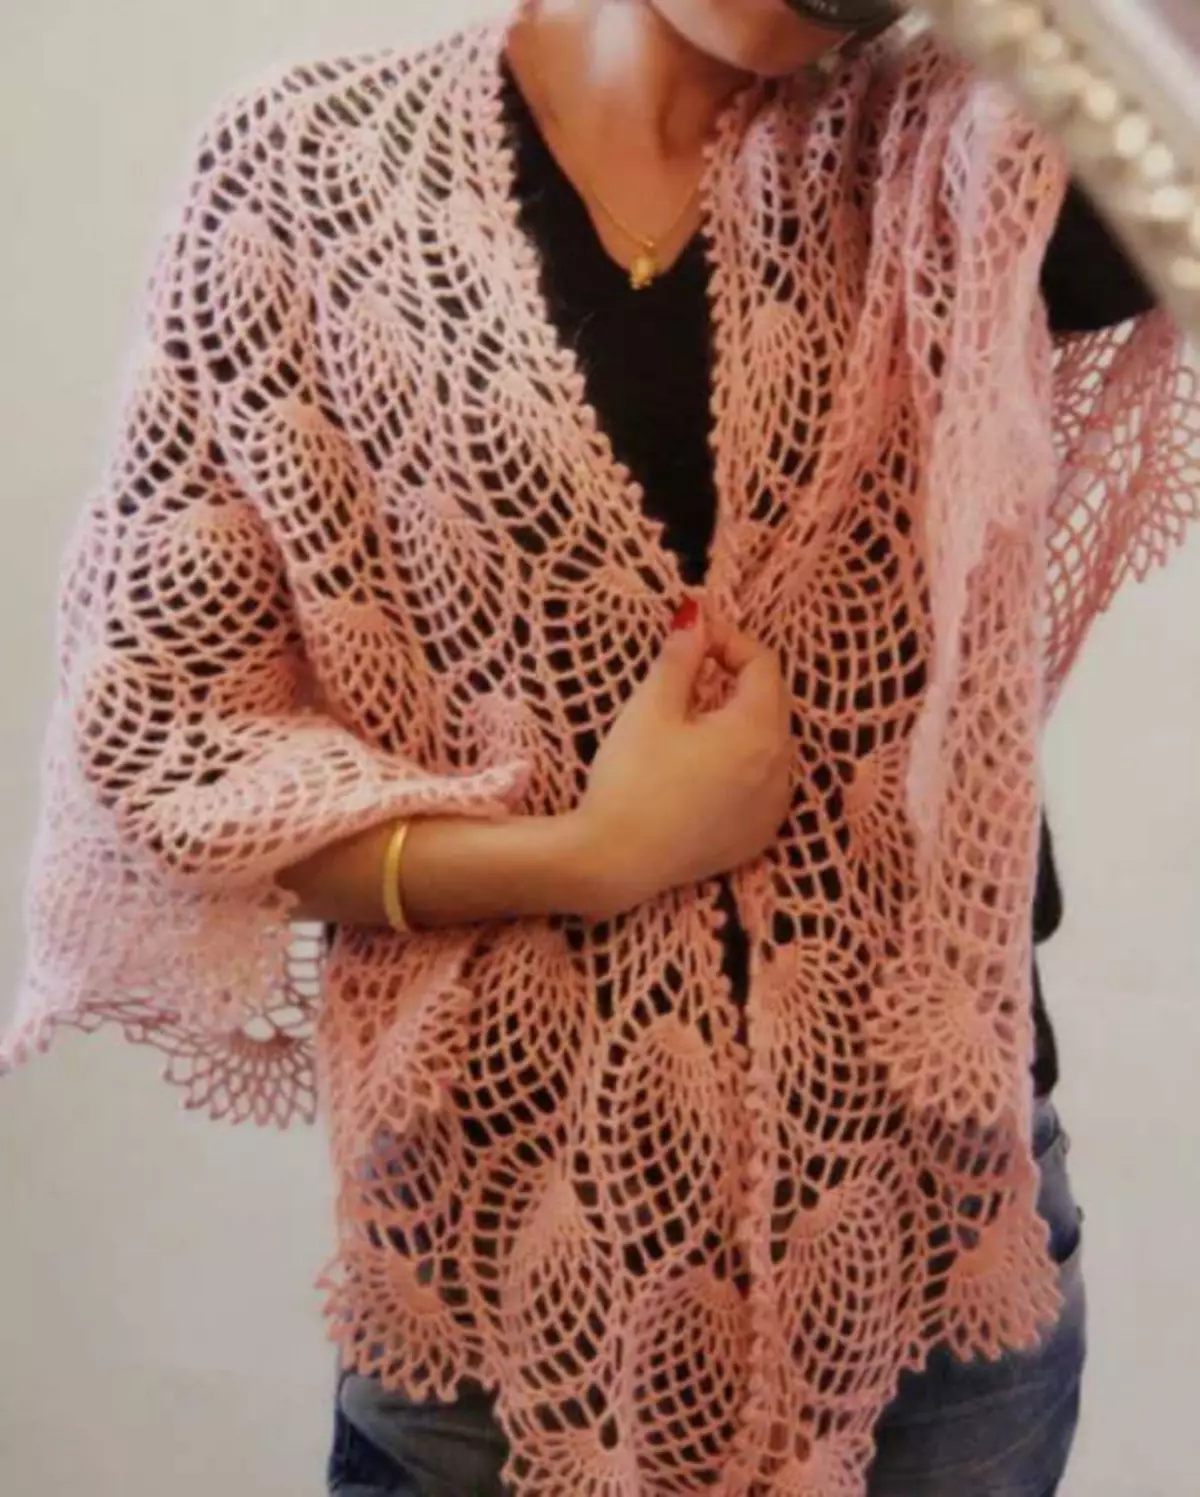 Trijehoekige crochet shawl mei in skema en beskriuwing foar begjinners